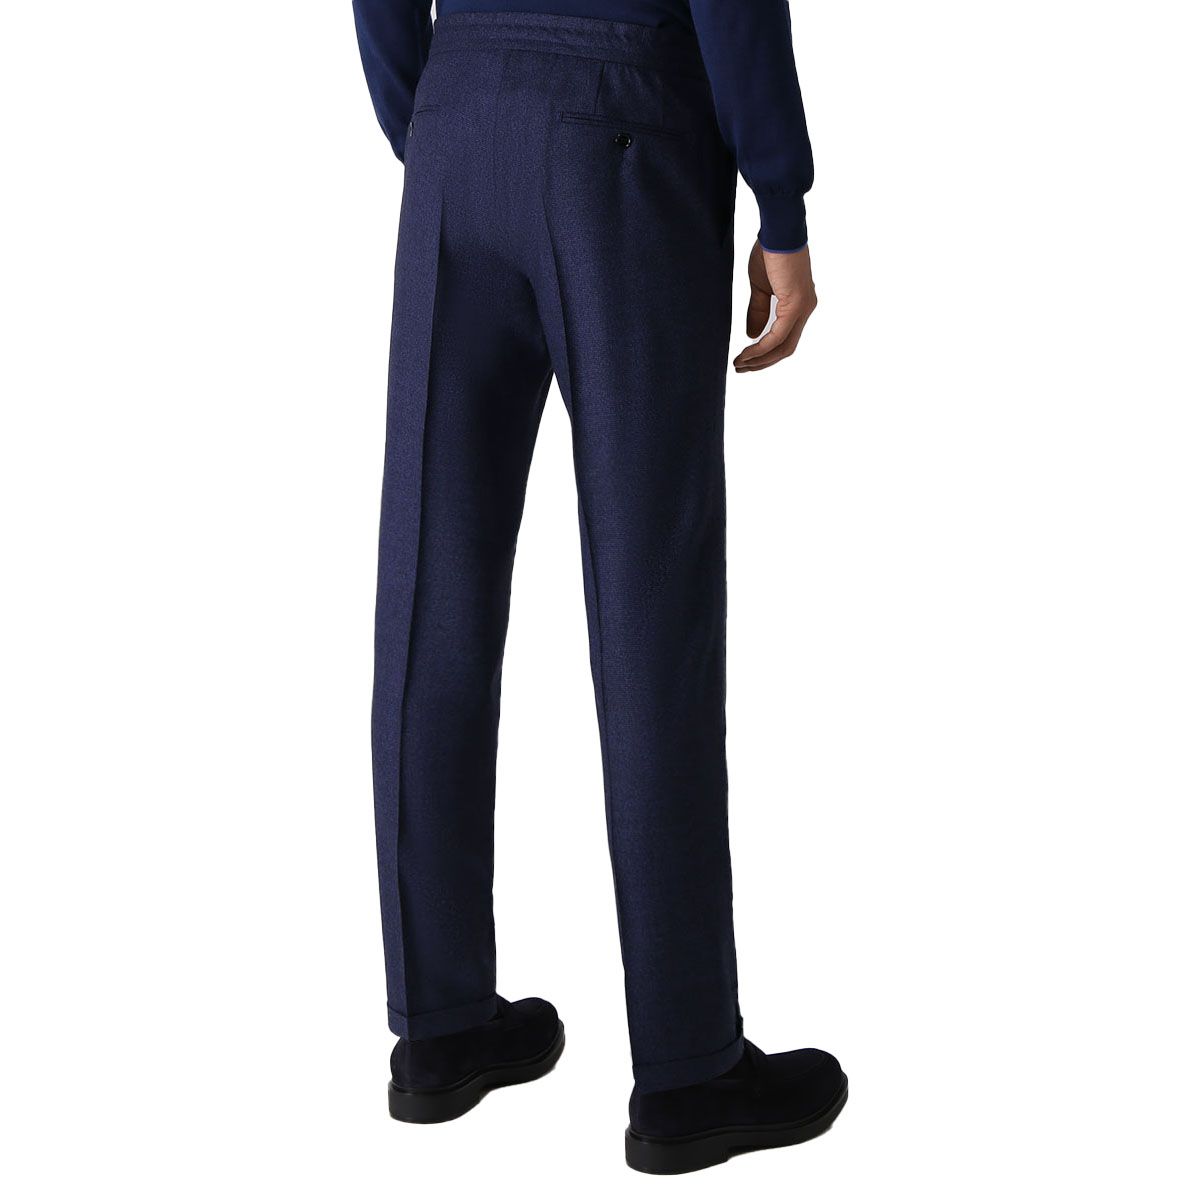 007 Slim Fit Blue Suit